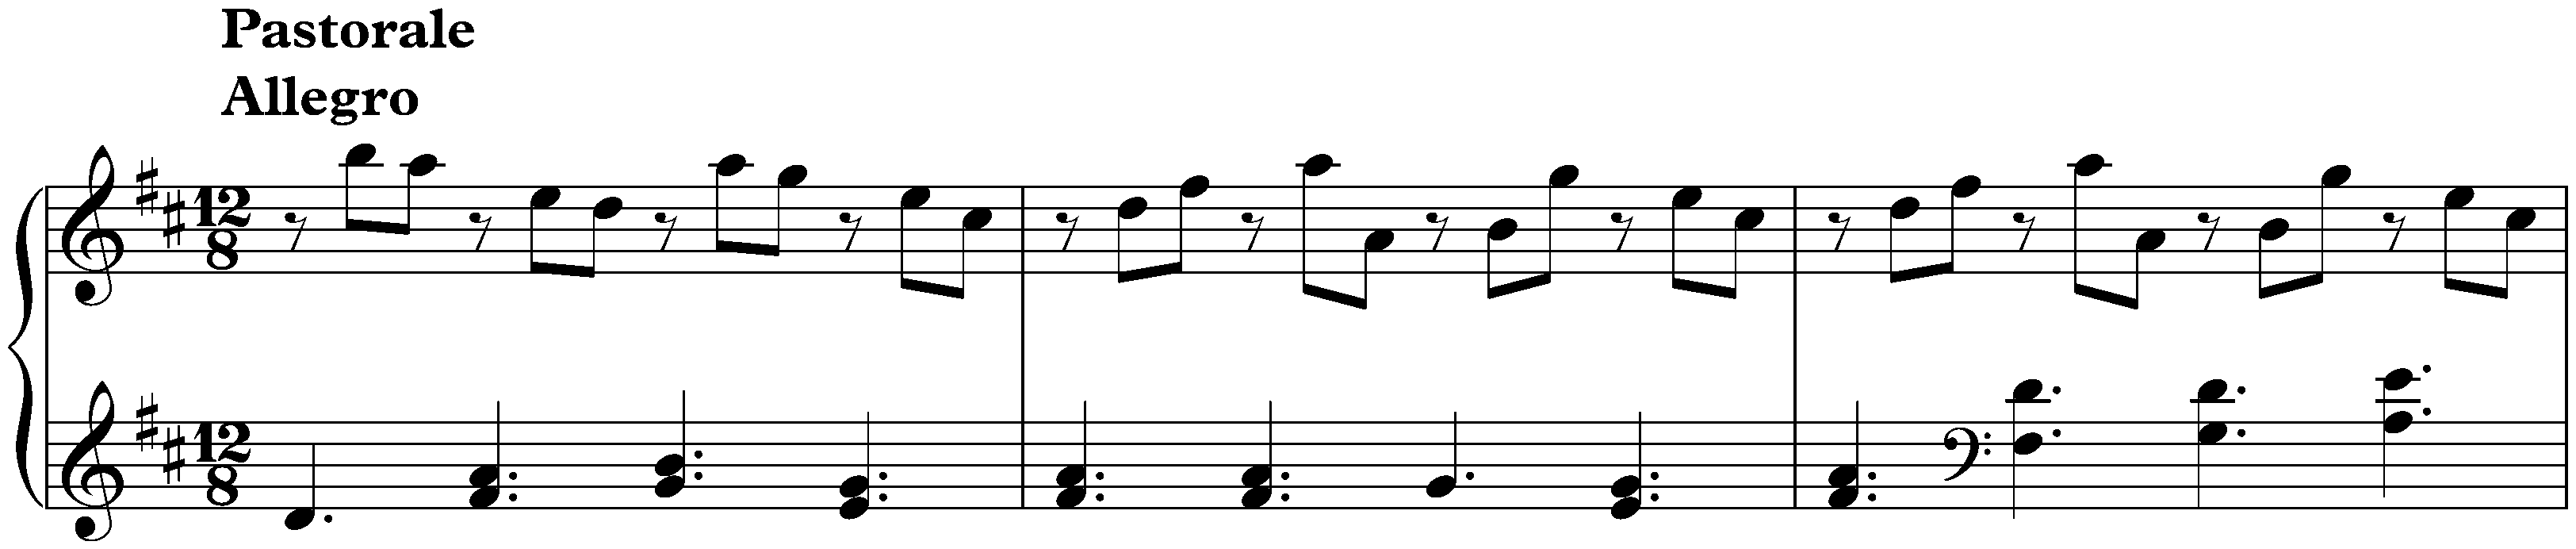 Sonata in D major, K. 415